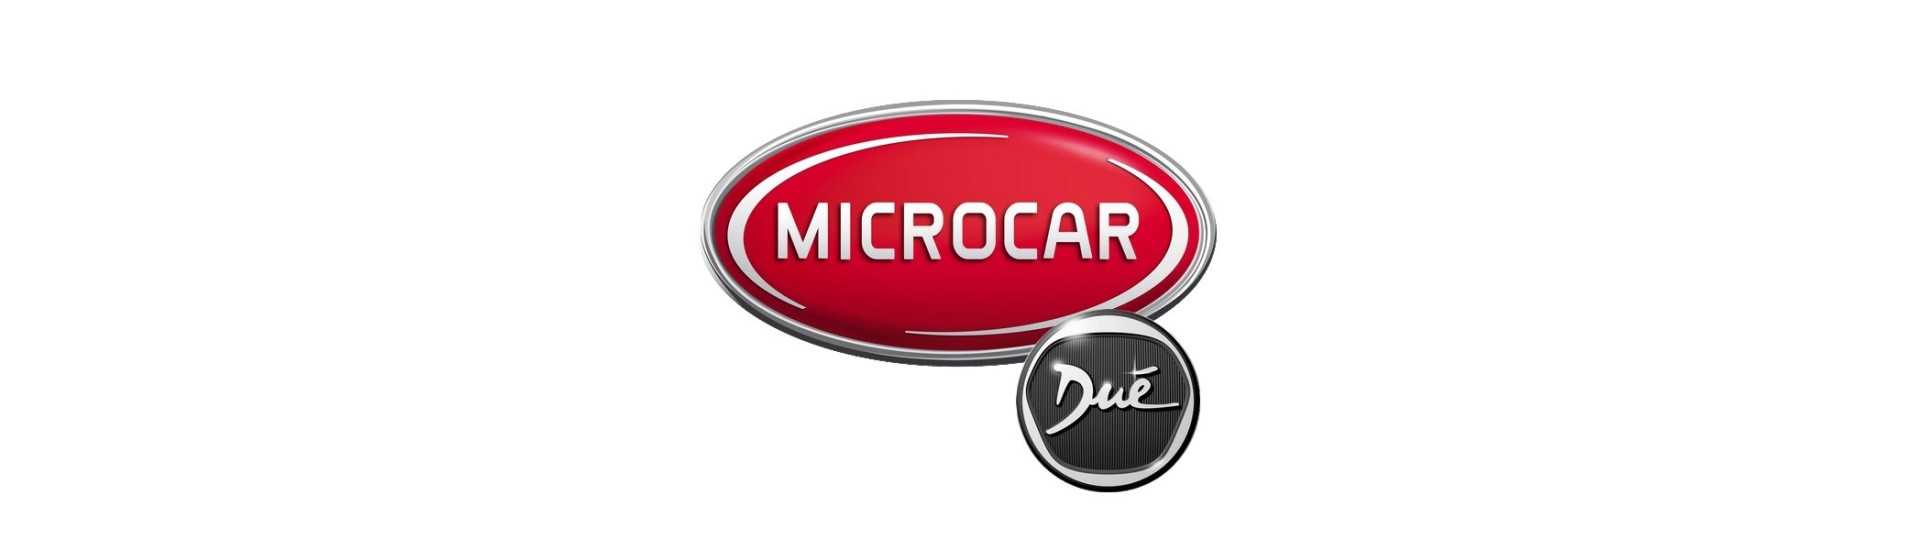 Suporte de metal ao melhor preço para o carro sem uma permissão Microcar Dué